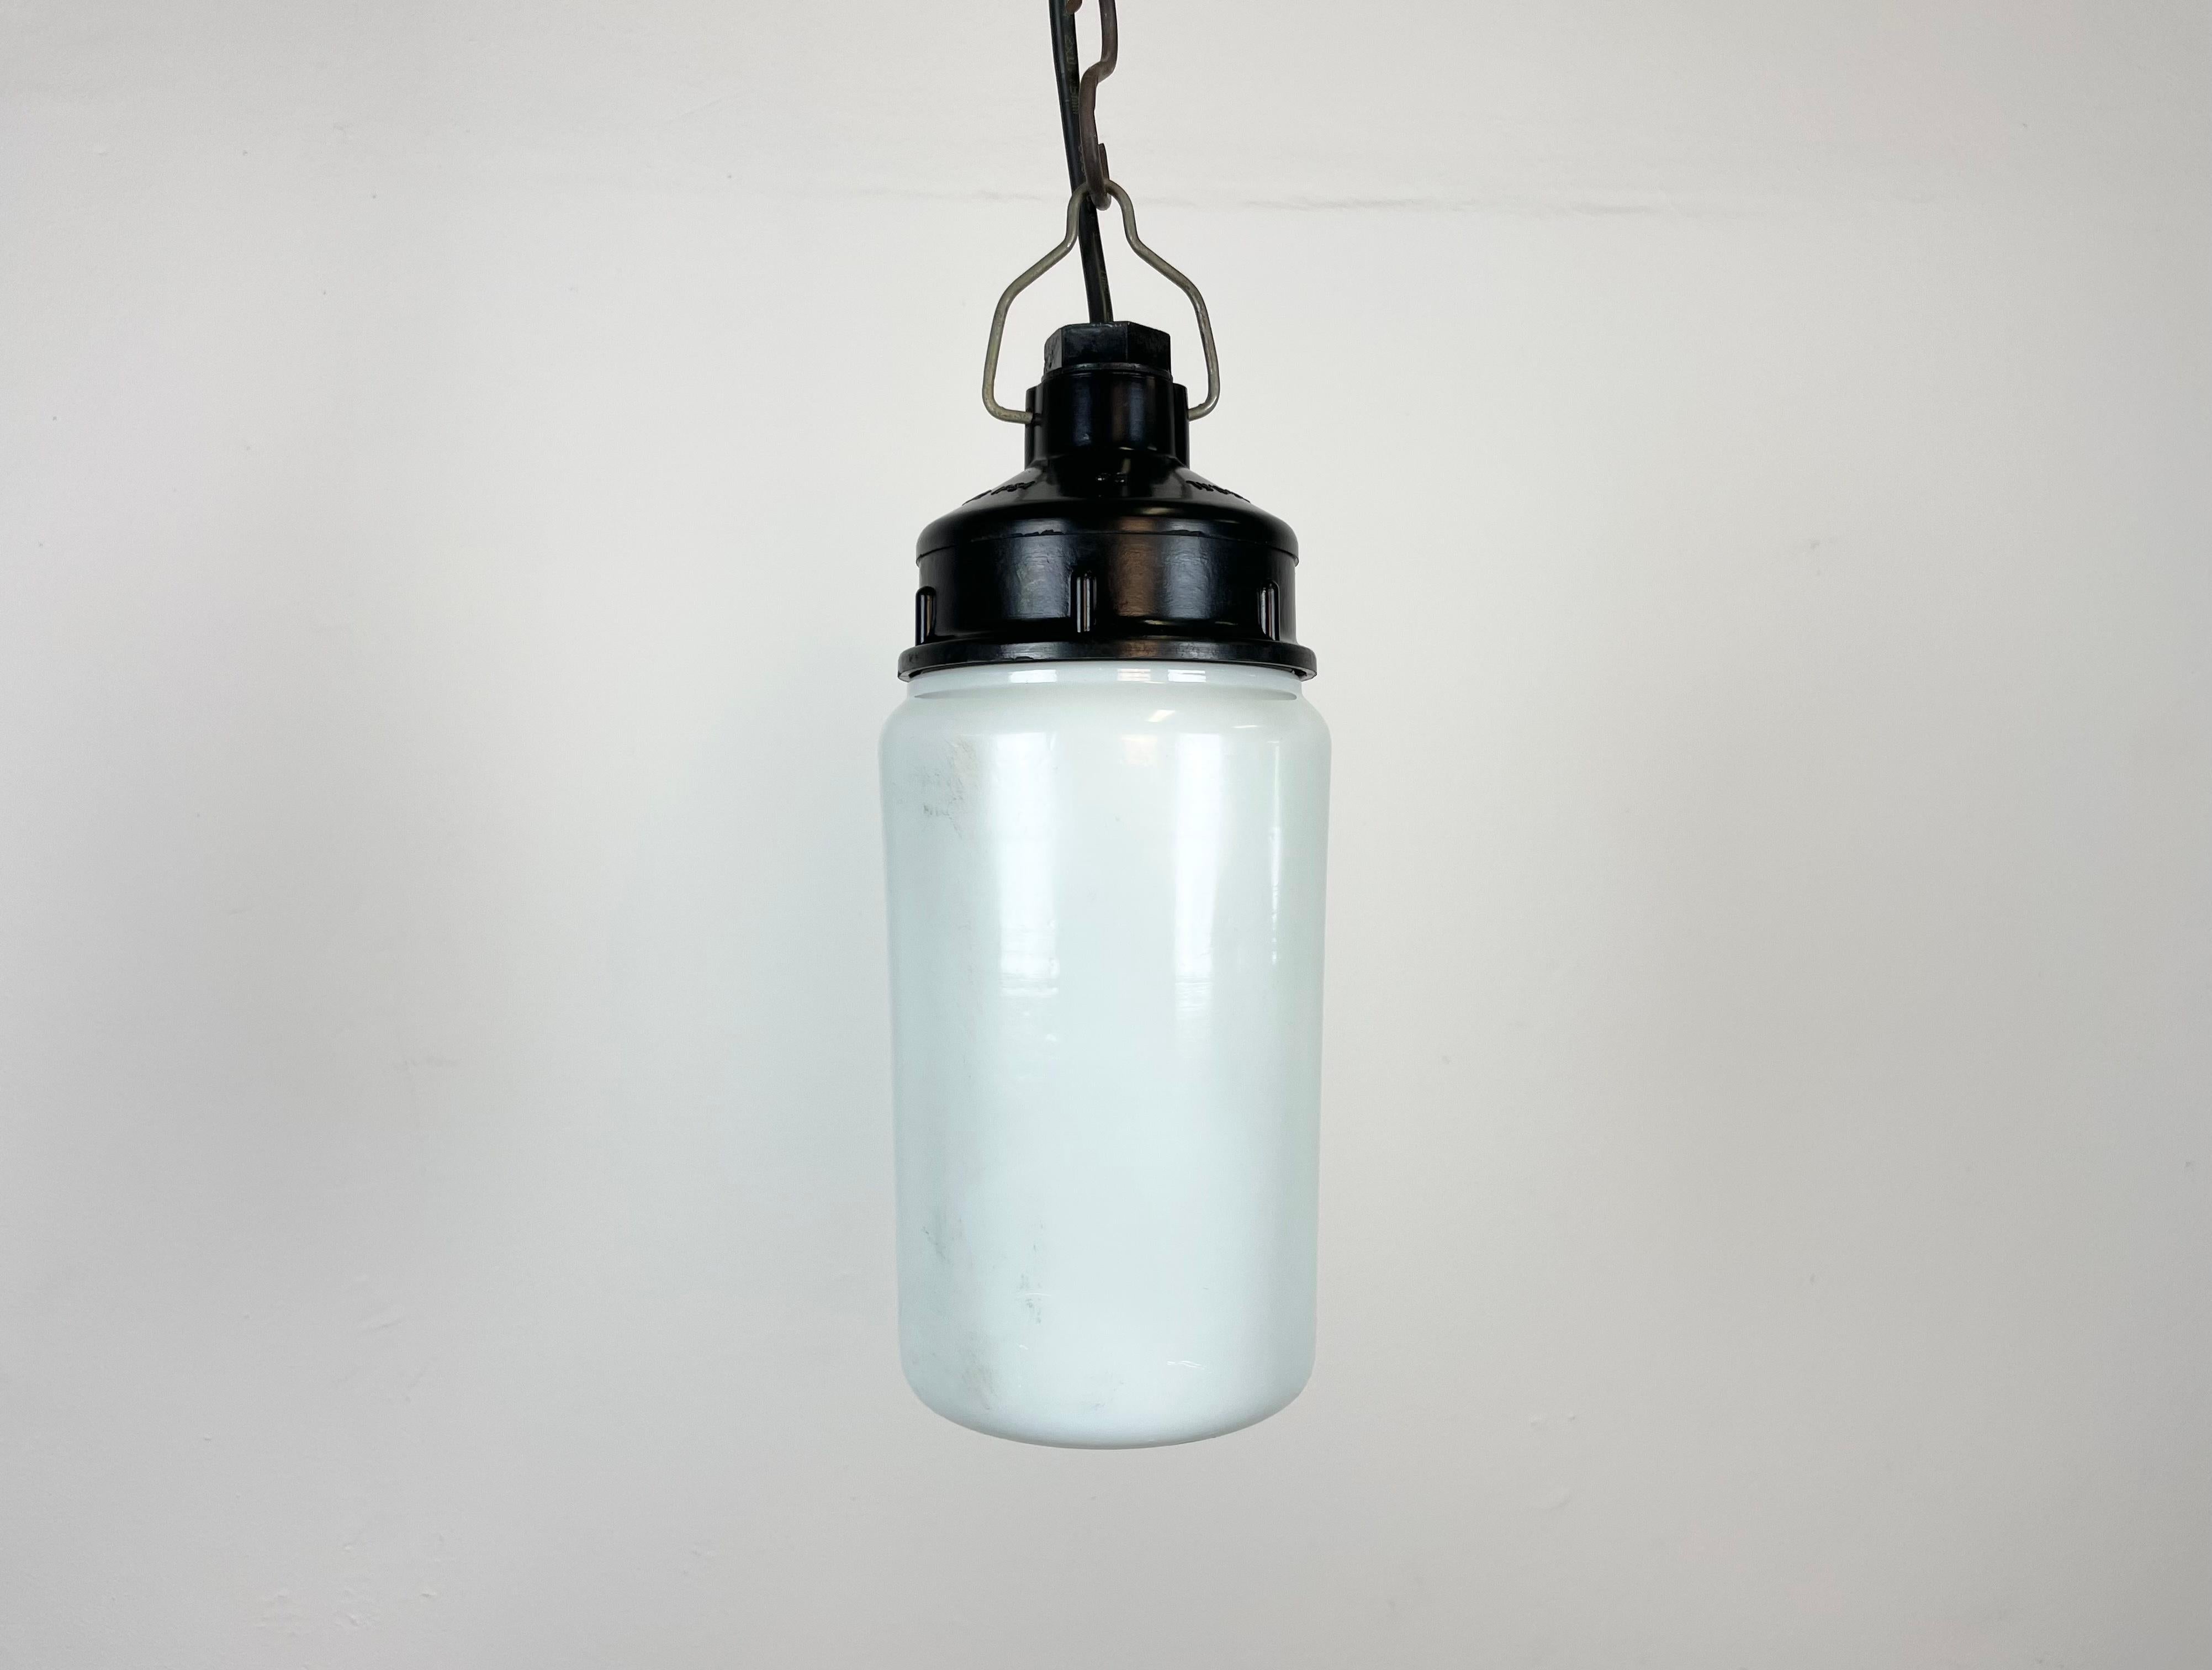 Lampe industrielle vintage fabriquée en ex-Union soviétique dans les années 1970. Il présente un plateau en bakélite marron et un couvercle en verre laiteux. La douille nécessite des ampoules E27/E 26. Un nouveau fil. Le poids de la lampe est de